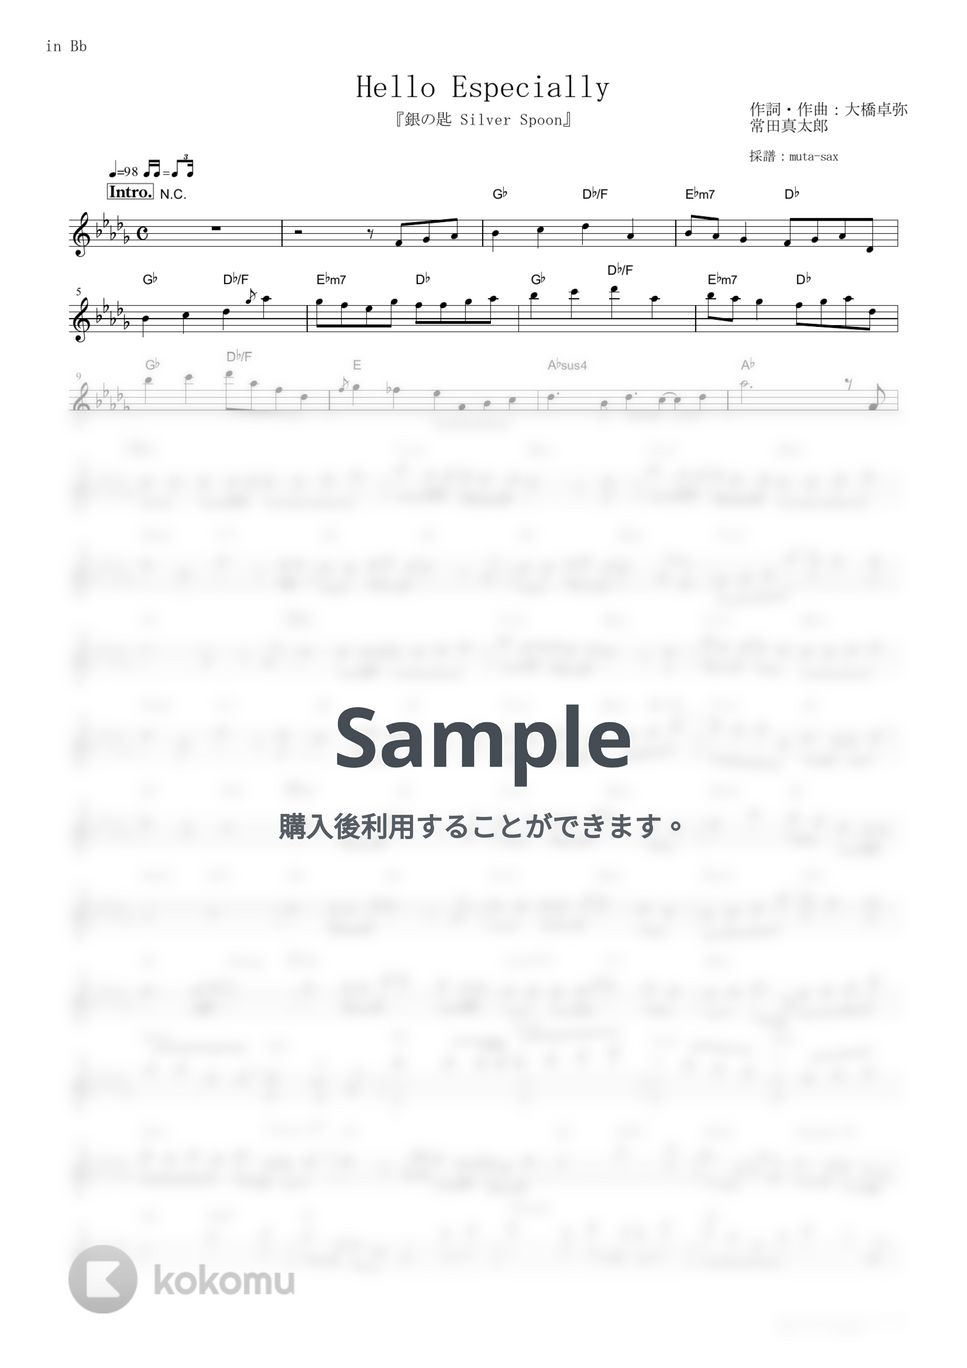 スキマスイッチ - Hello Especially (『銀の匙 Silver Spoon』 / in Bb) by muta-sax